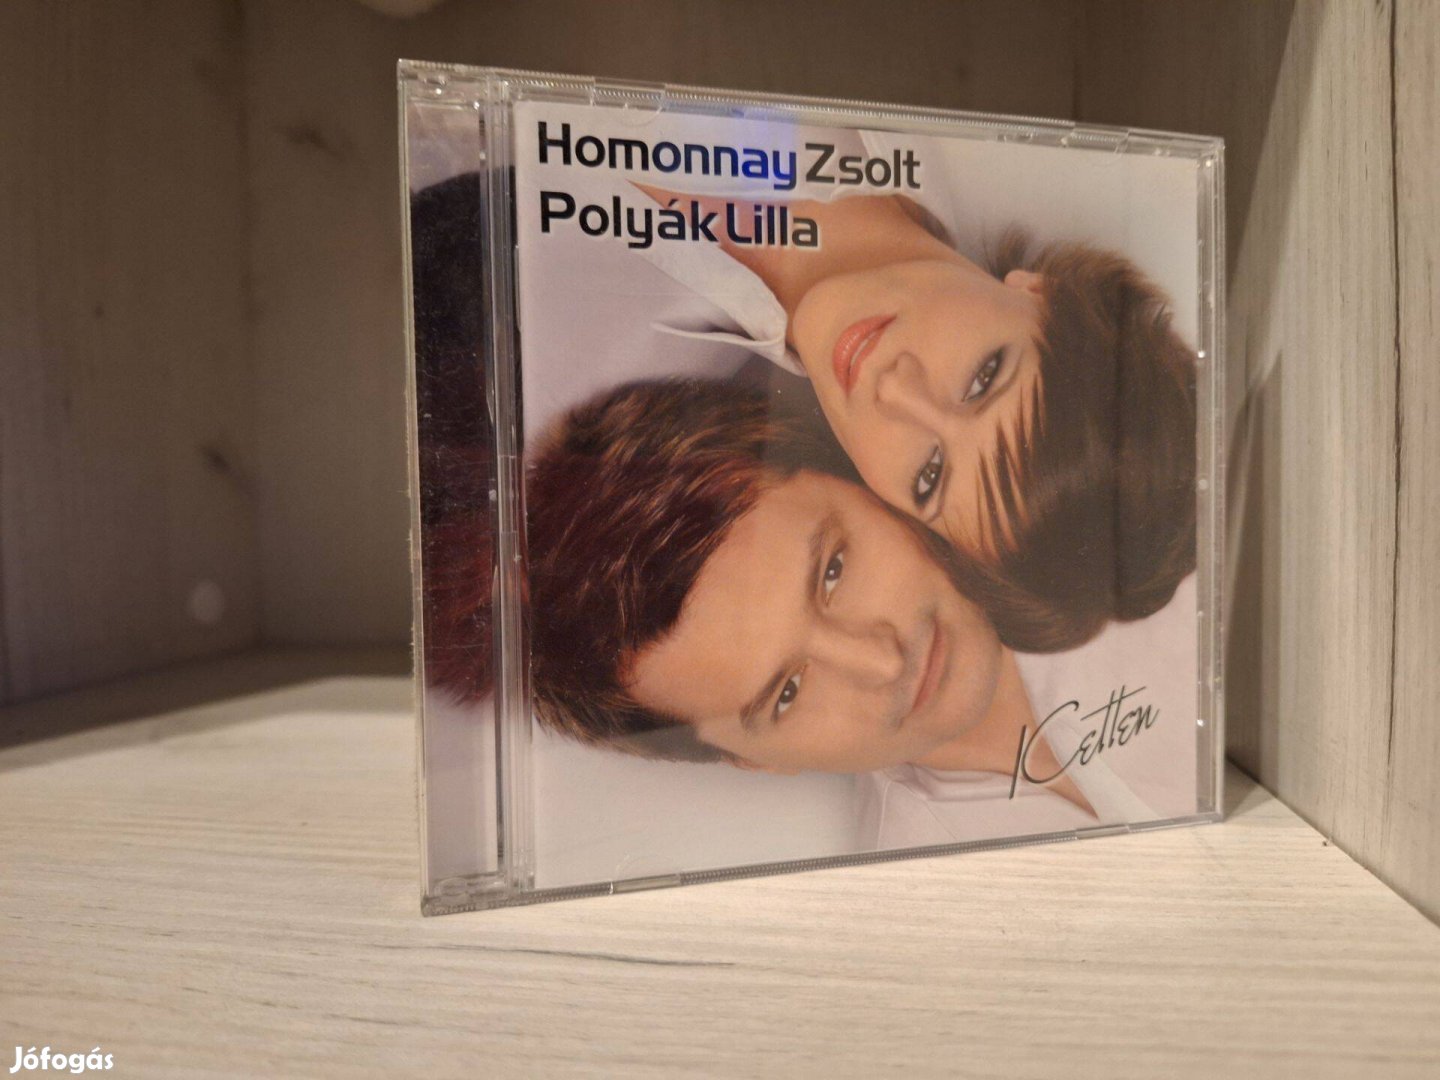 Homonnay Zsolt - Polyák Lilla - Ketten CD